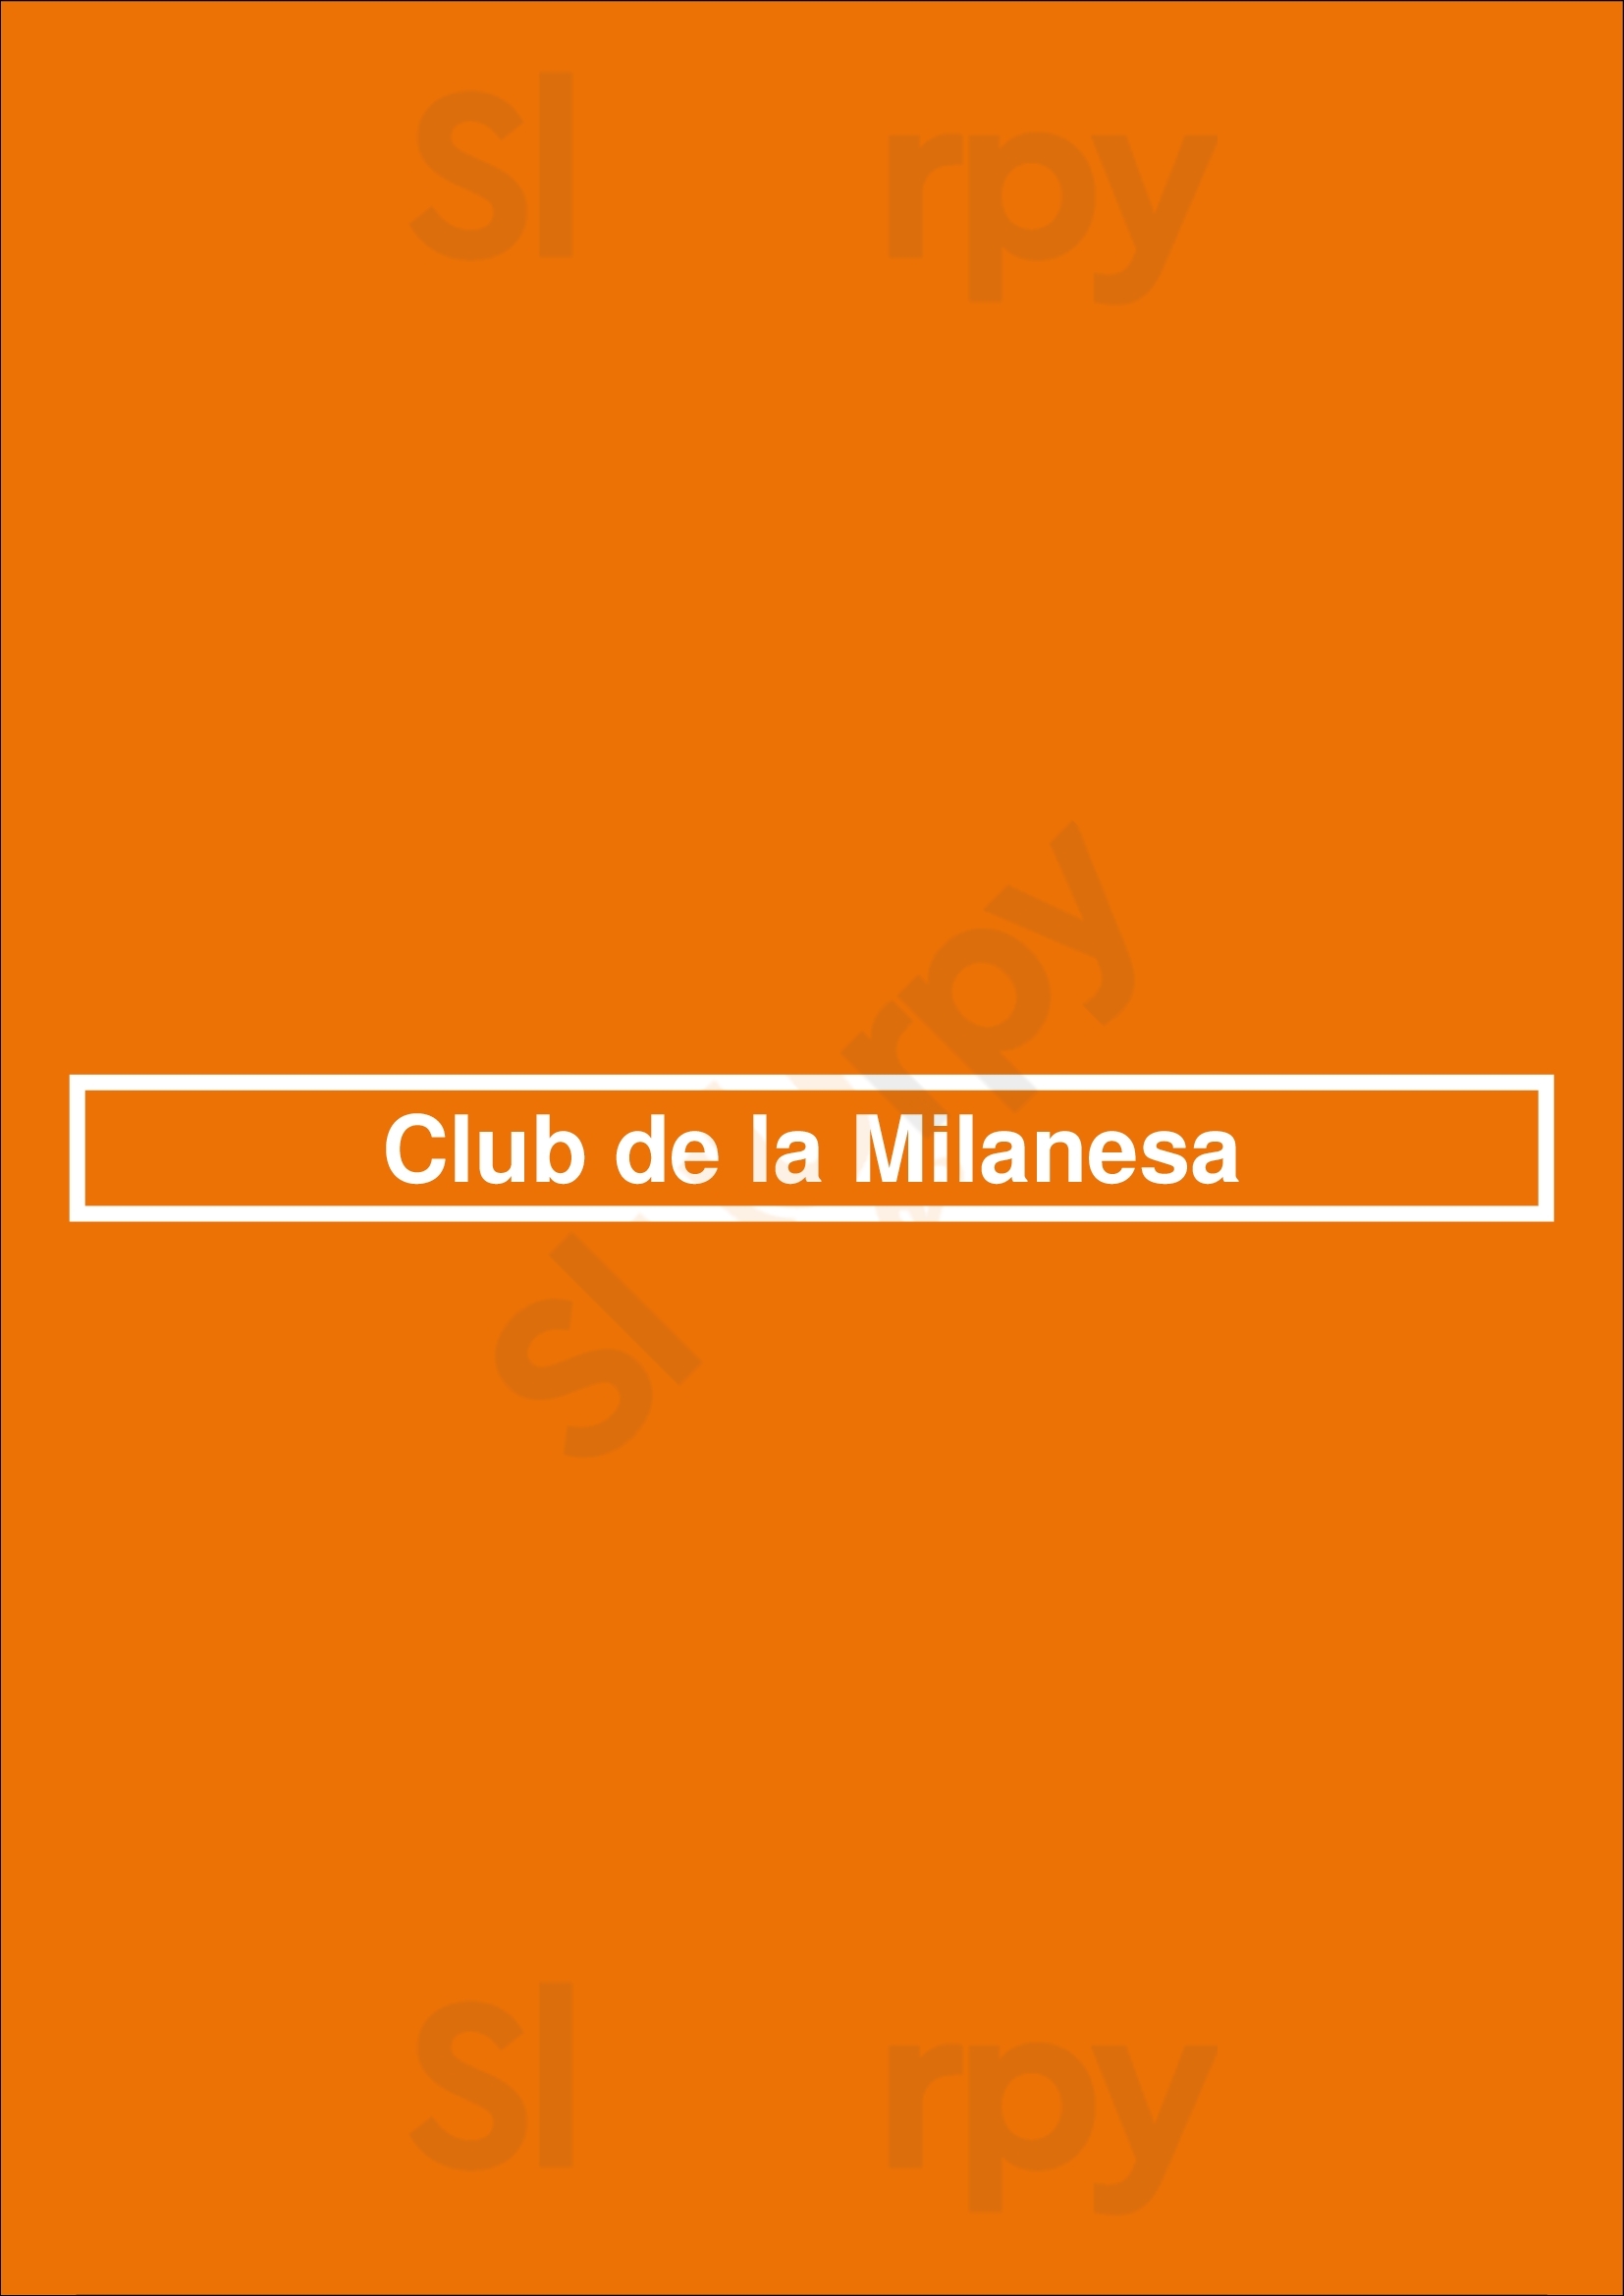 Club De La Milanesa Ramos Mejía Menu - 1